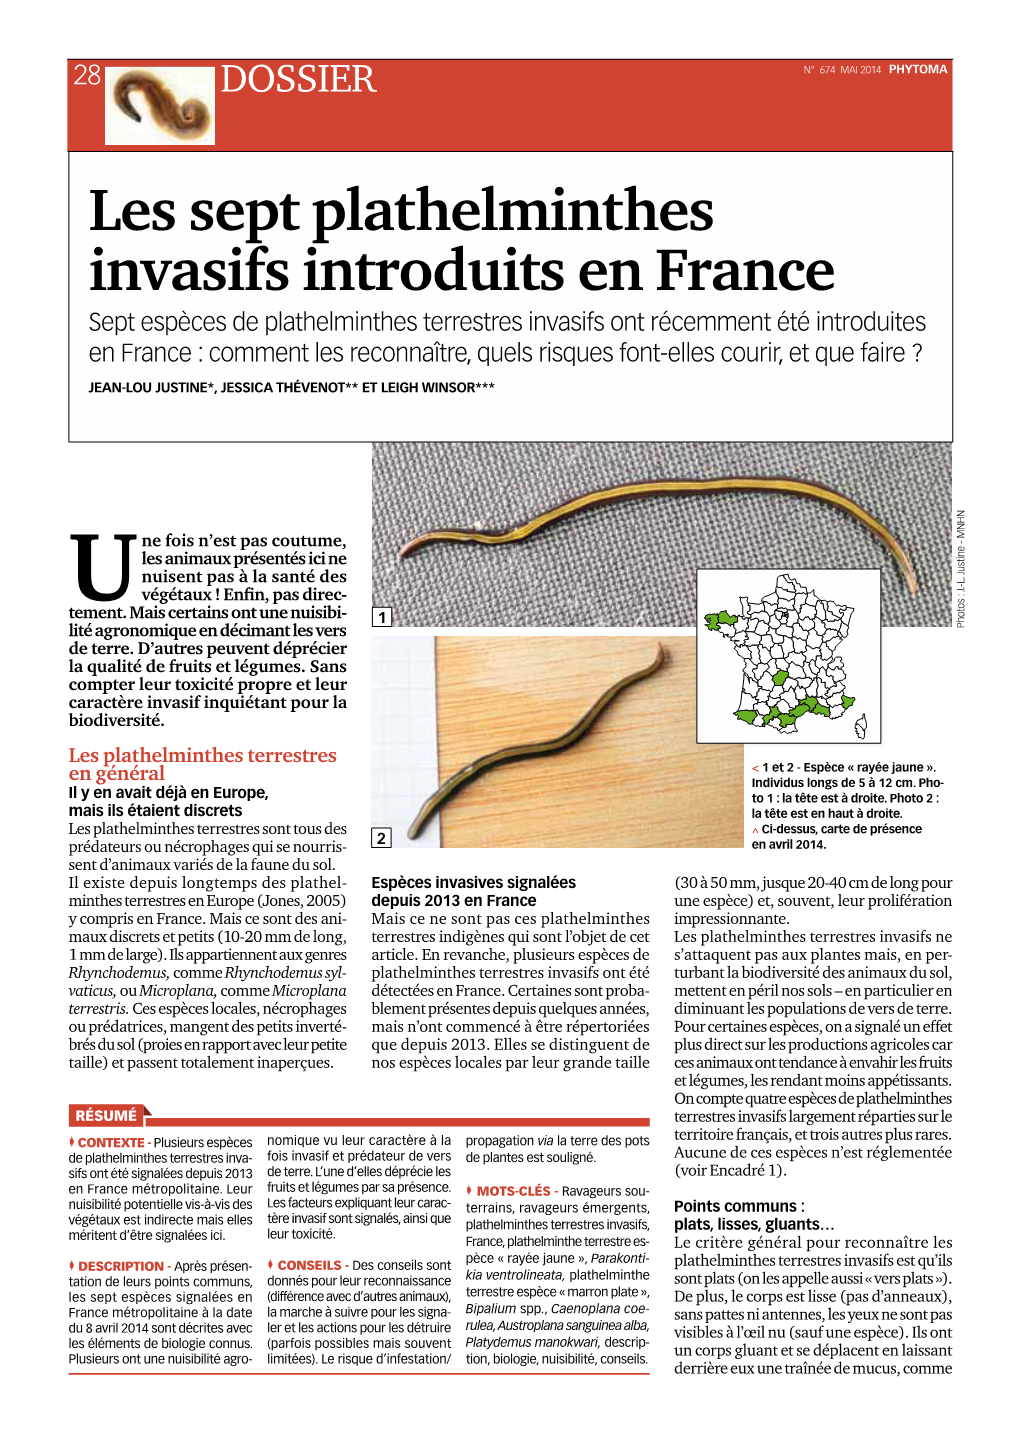 Les Sept Plathelminthes Invasifs Introduits En France